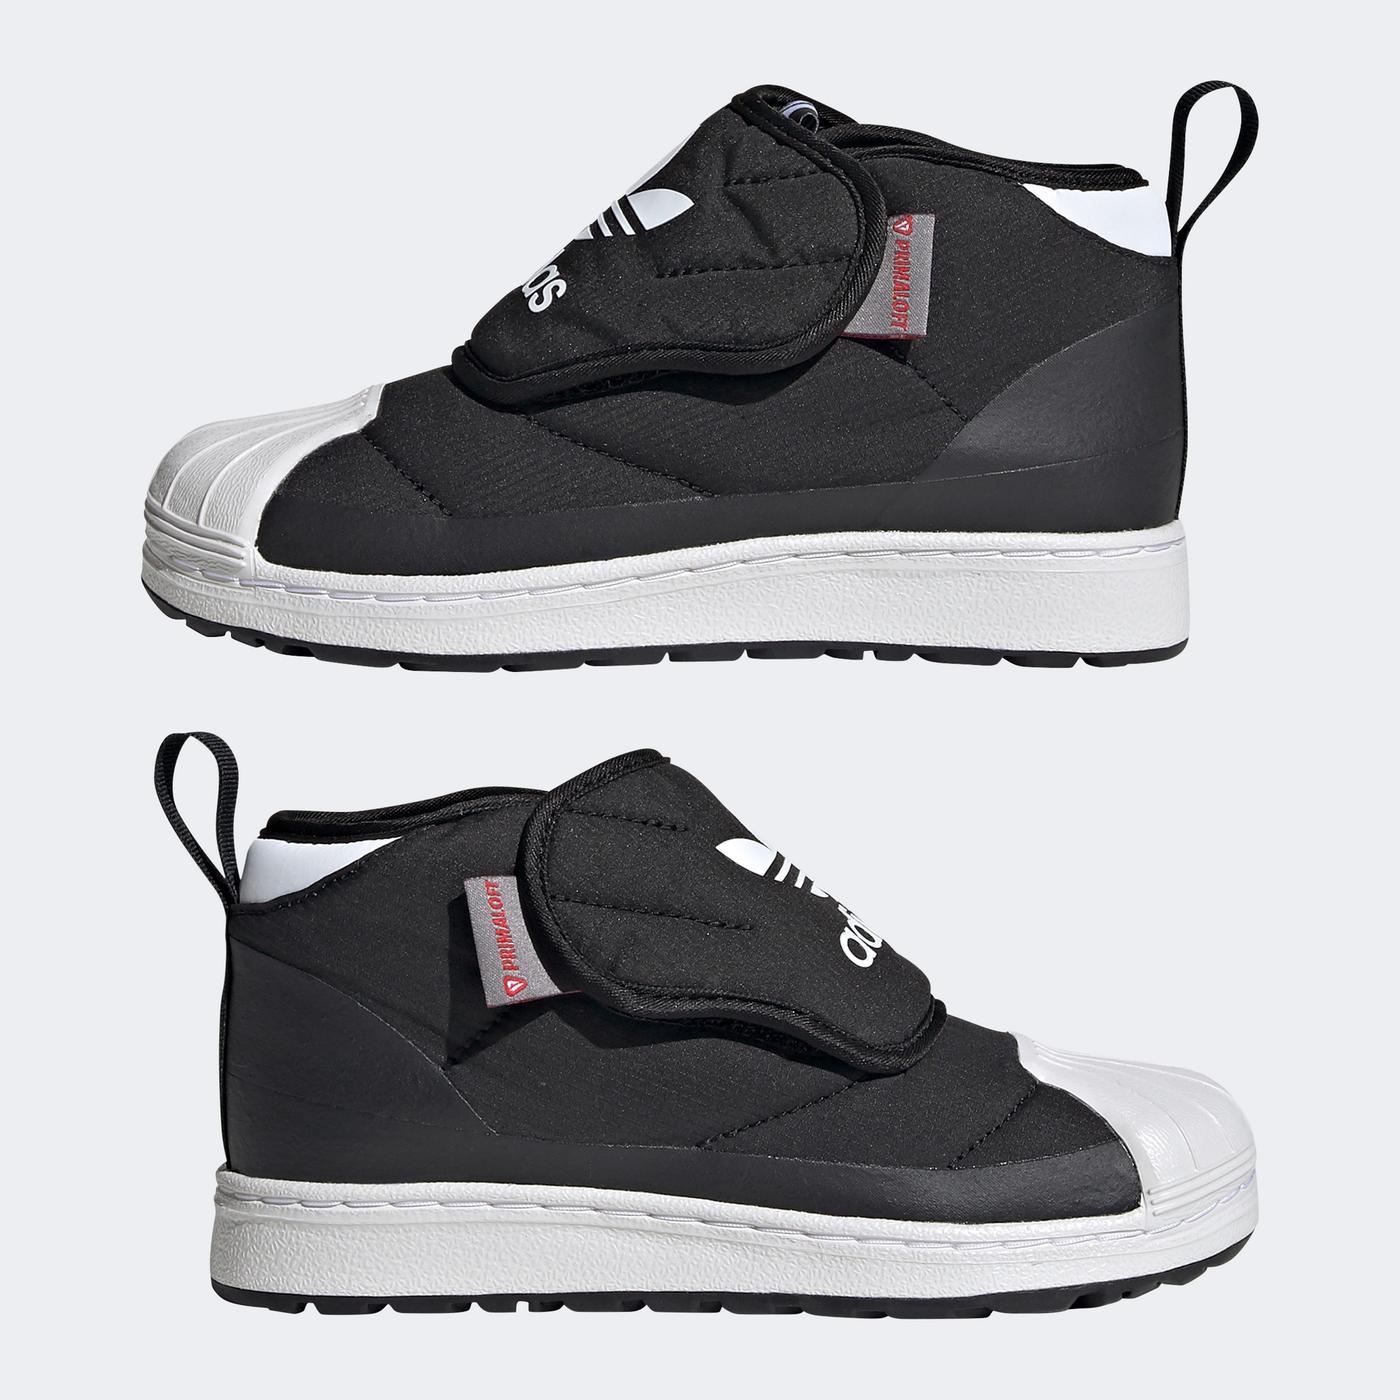 adidas Superstar 360 Boot Çocuk Siyah Spor Ayakkabı